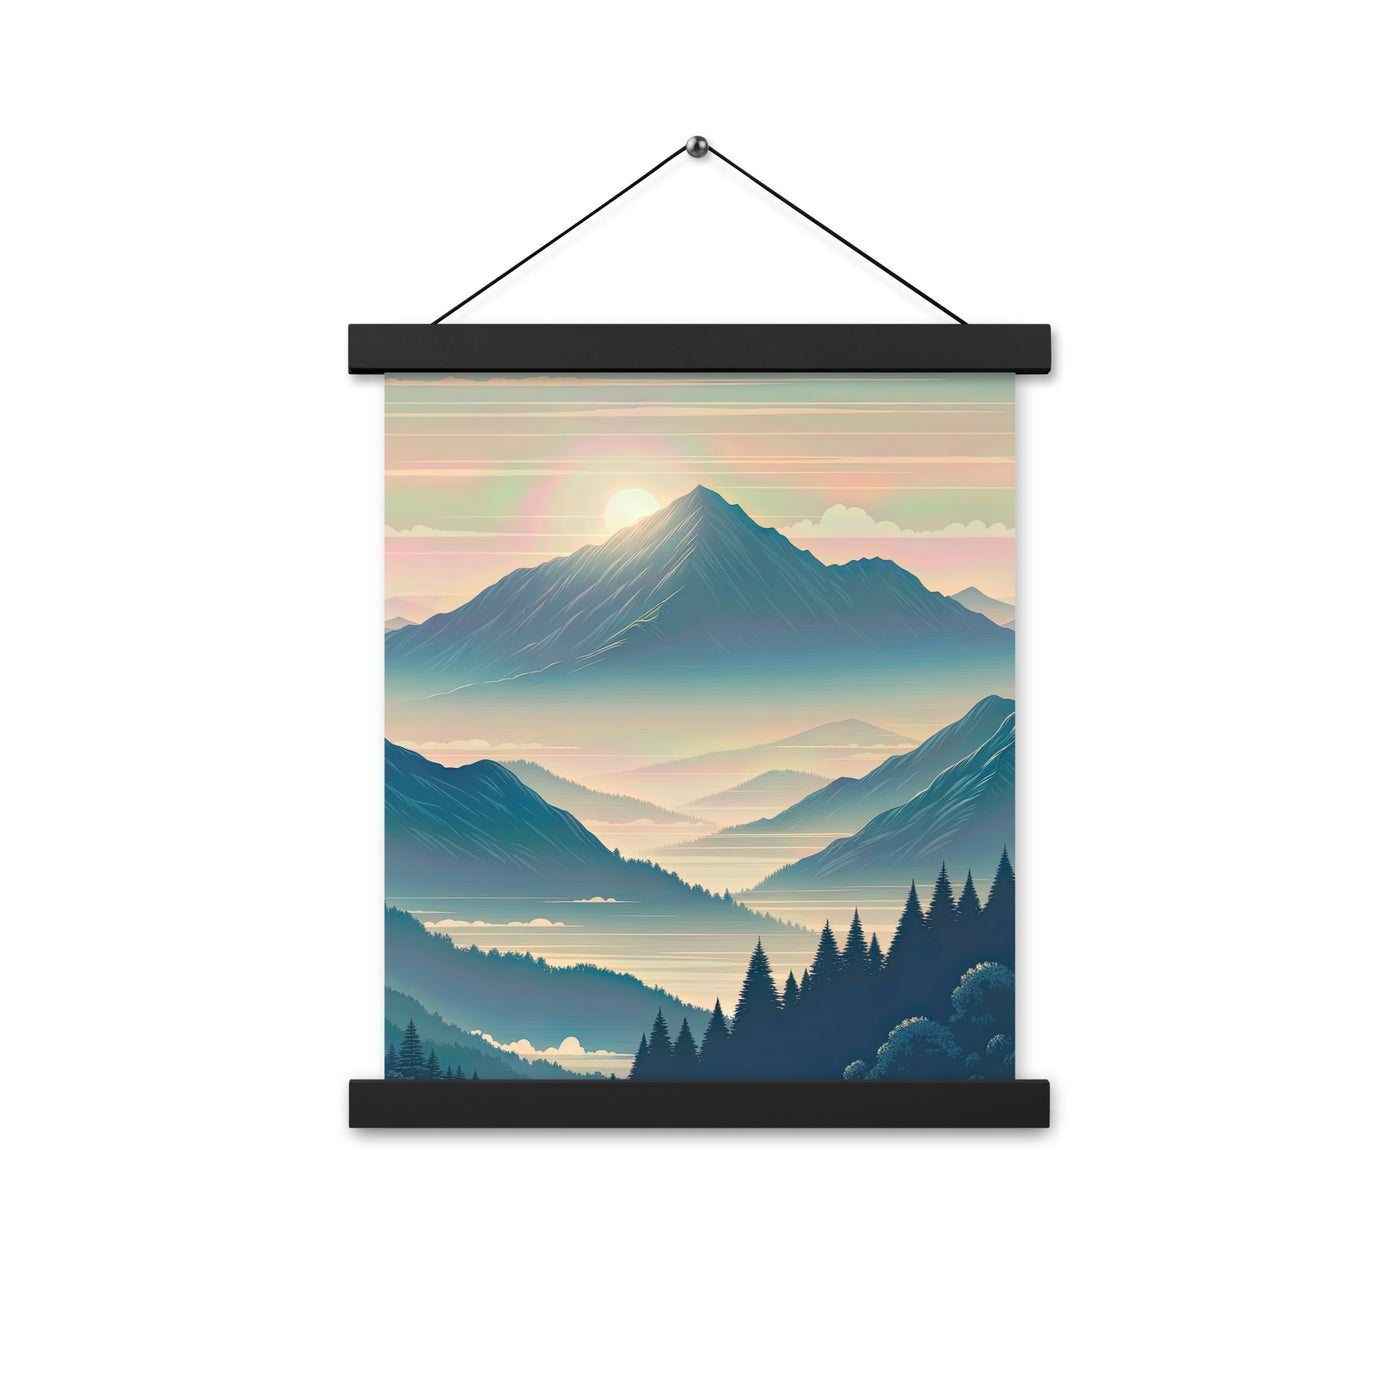 Bergszene bei Morgendämmerung, erste Sonnenstrahlen auf Bergrücken - Premium Poster mit Aufhängung berge xxx yyy zzz 27.9 x 35.6 cm